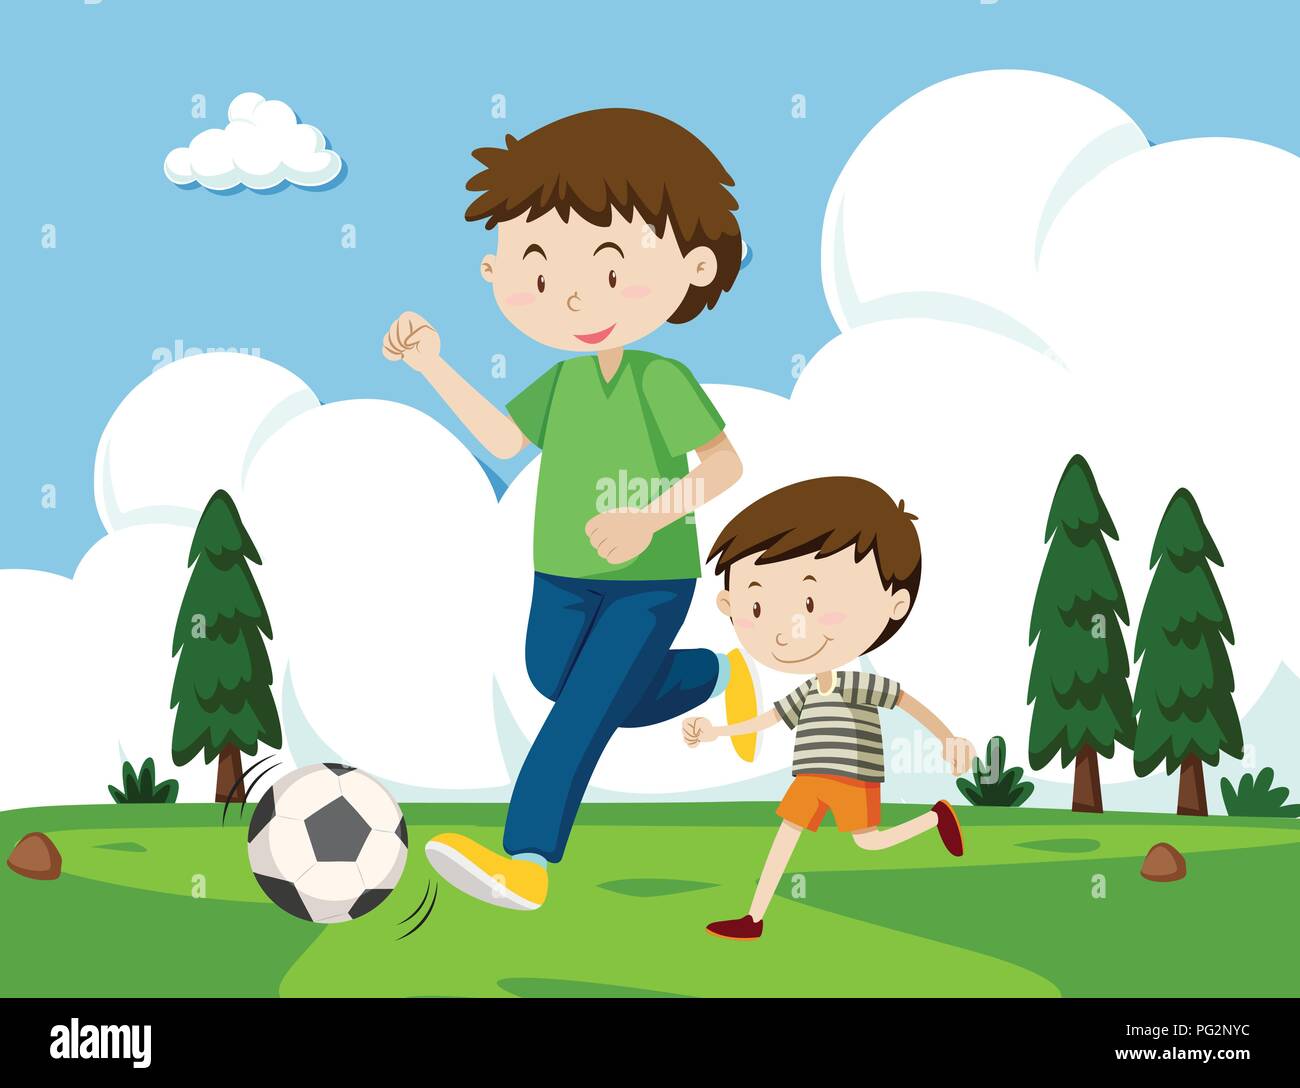 Папа играет в футбол. Детская иллюстрация папа и сын. Папа играет в футбол иллюстрация. Папа с ребенком играют в футбол. Сюжетная картина футбол для детей.